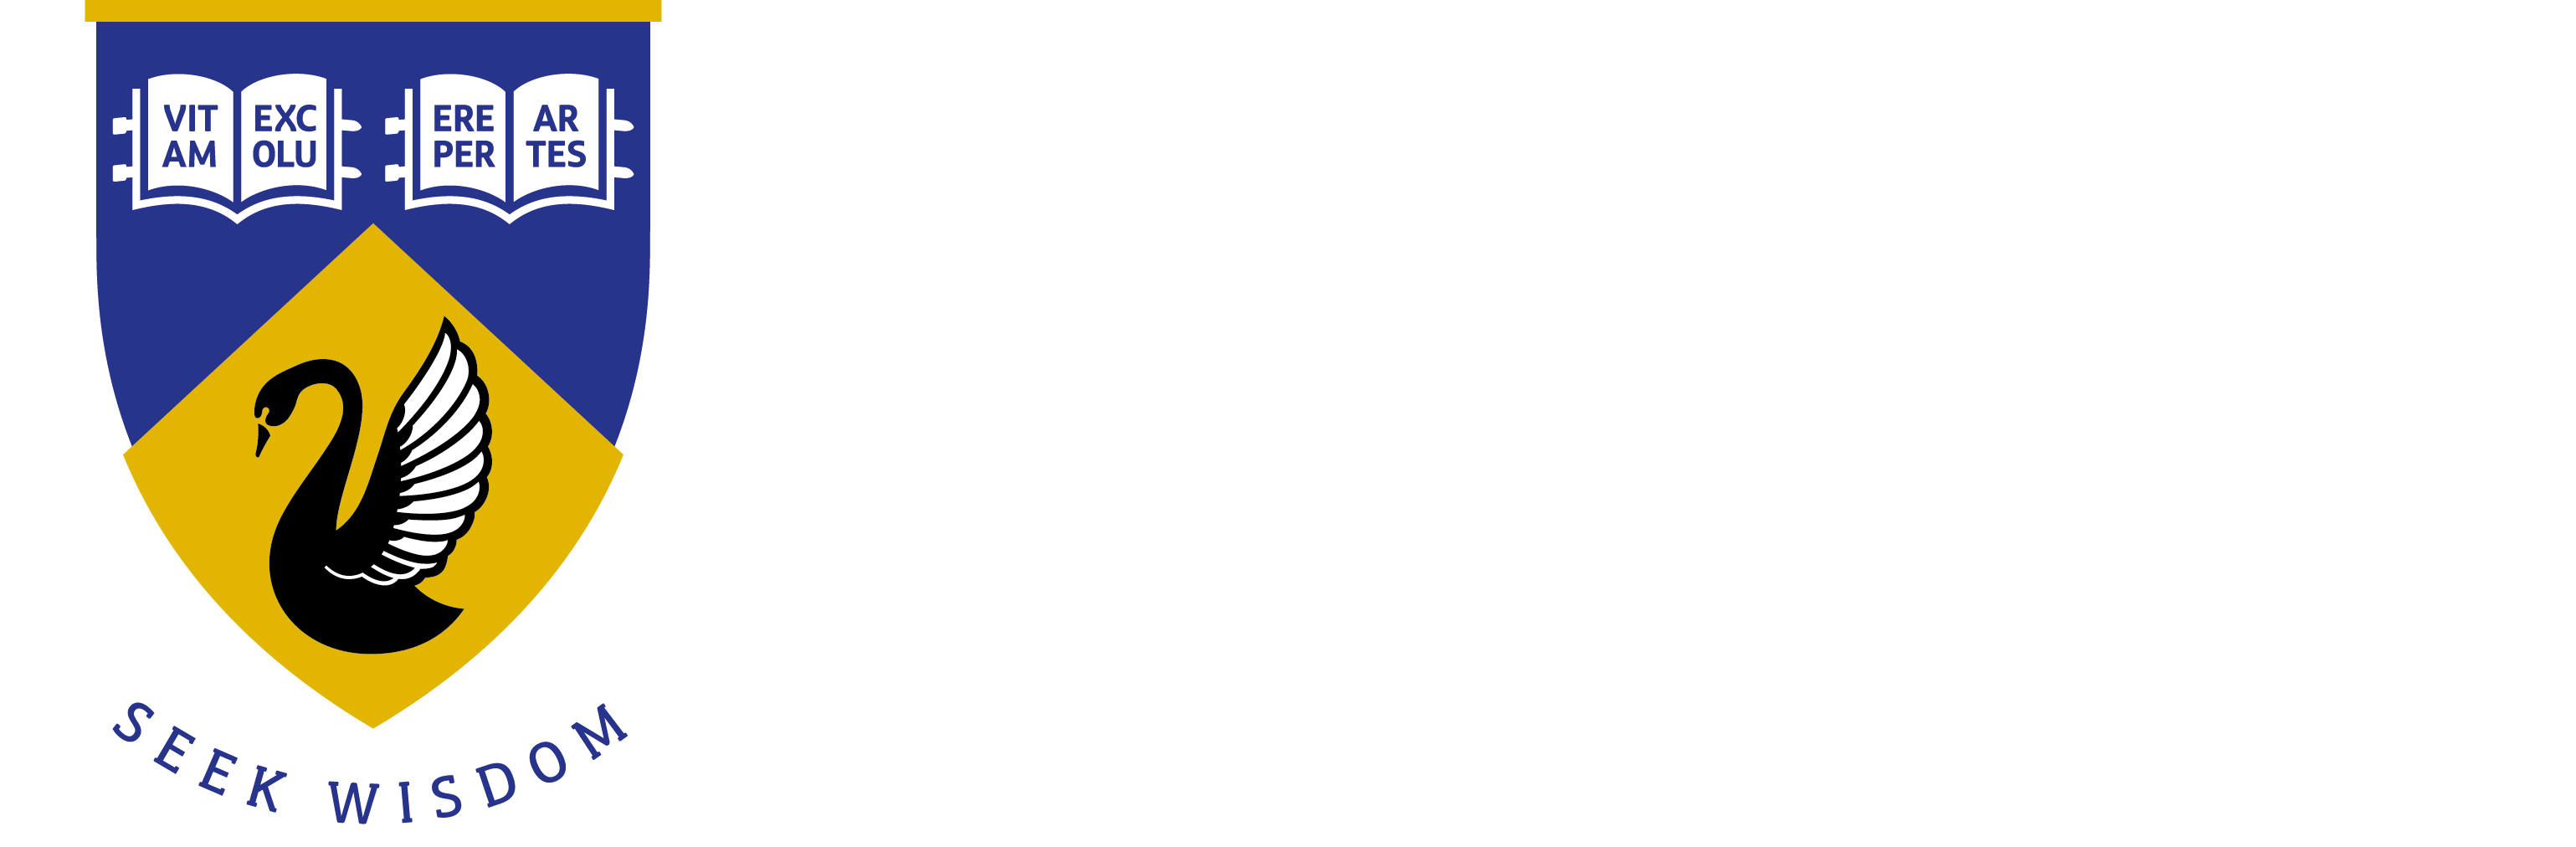 New UWA Acronym Logo